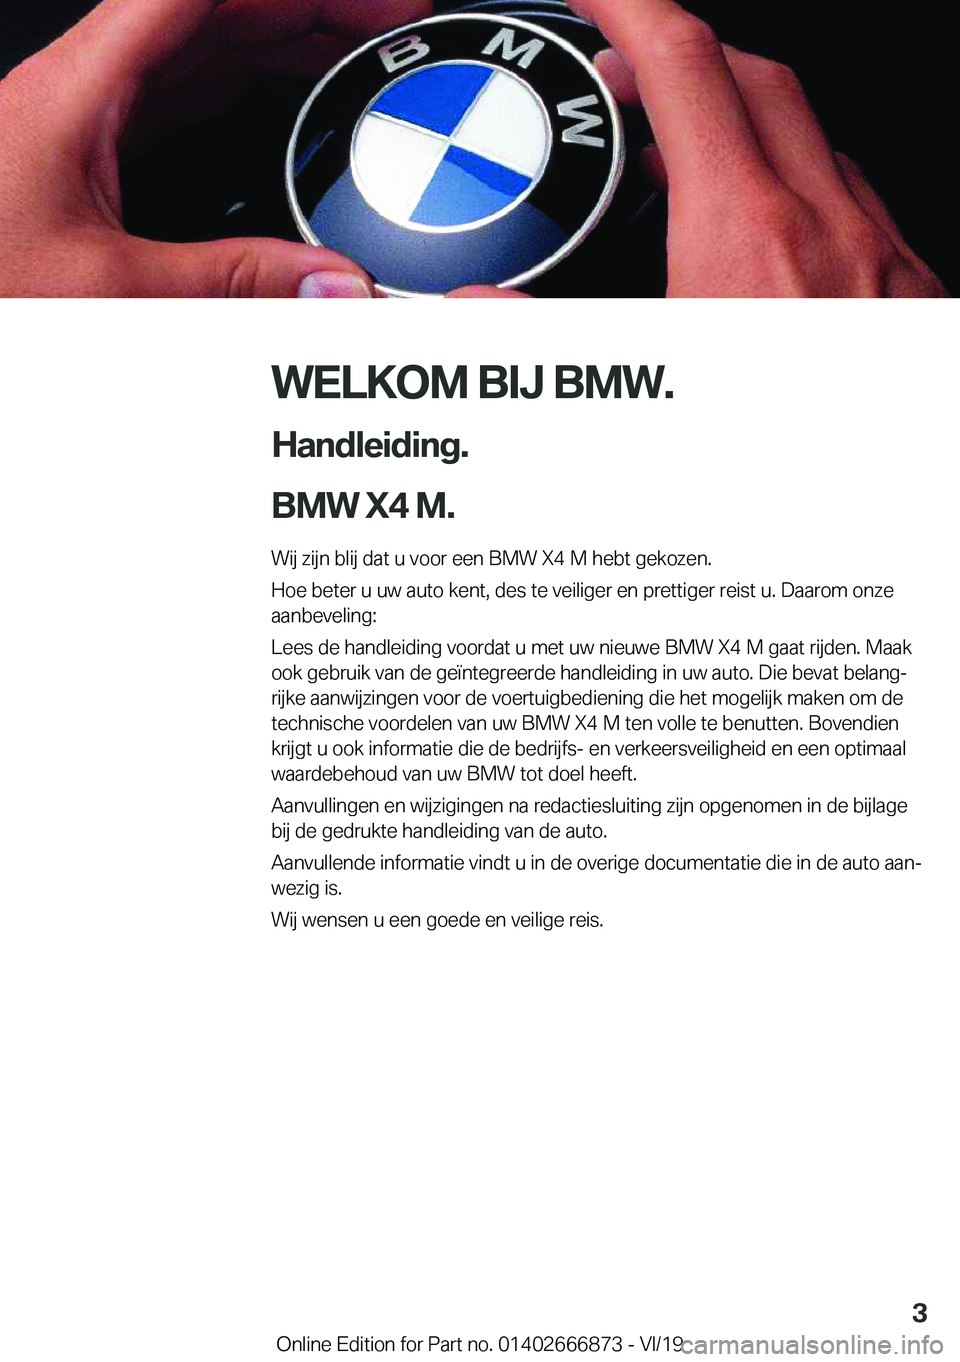 BMW X4 M 2020  Instructieboekjes (in Dutch) �W�E�L�K�O�M��B�I�J��B�M�W�.
�H�a�n�d�l�e�i�d�i�n�g�.
�B�M�W��X�4��M�. �W�i�j��z�i�j�n��b�l�i�j��d�a�t��u��v�o�o�r��e�e�n��B�M�W��X�4��M��h�e�b�t��g�e�k�o�z�e�n�.
�H�o�e��b�e�t�e�r��u